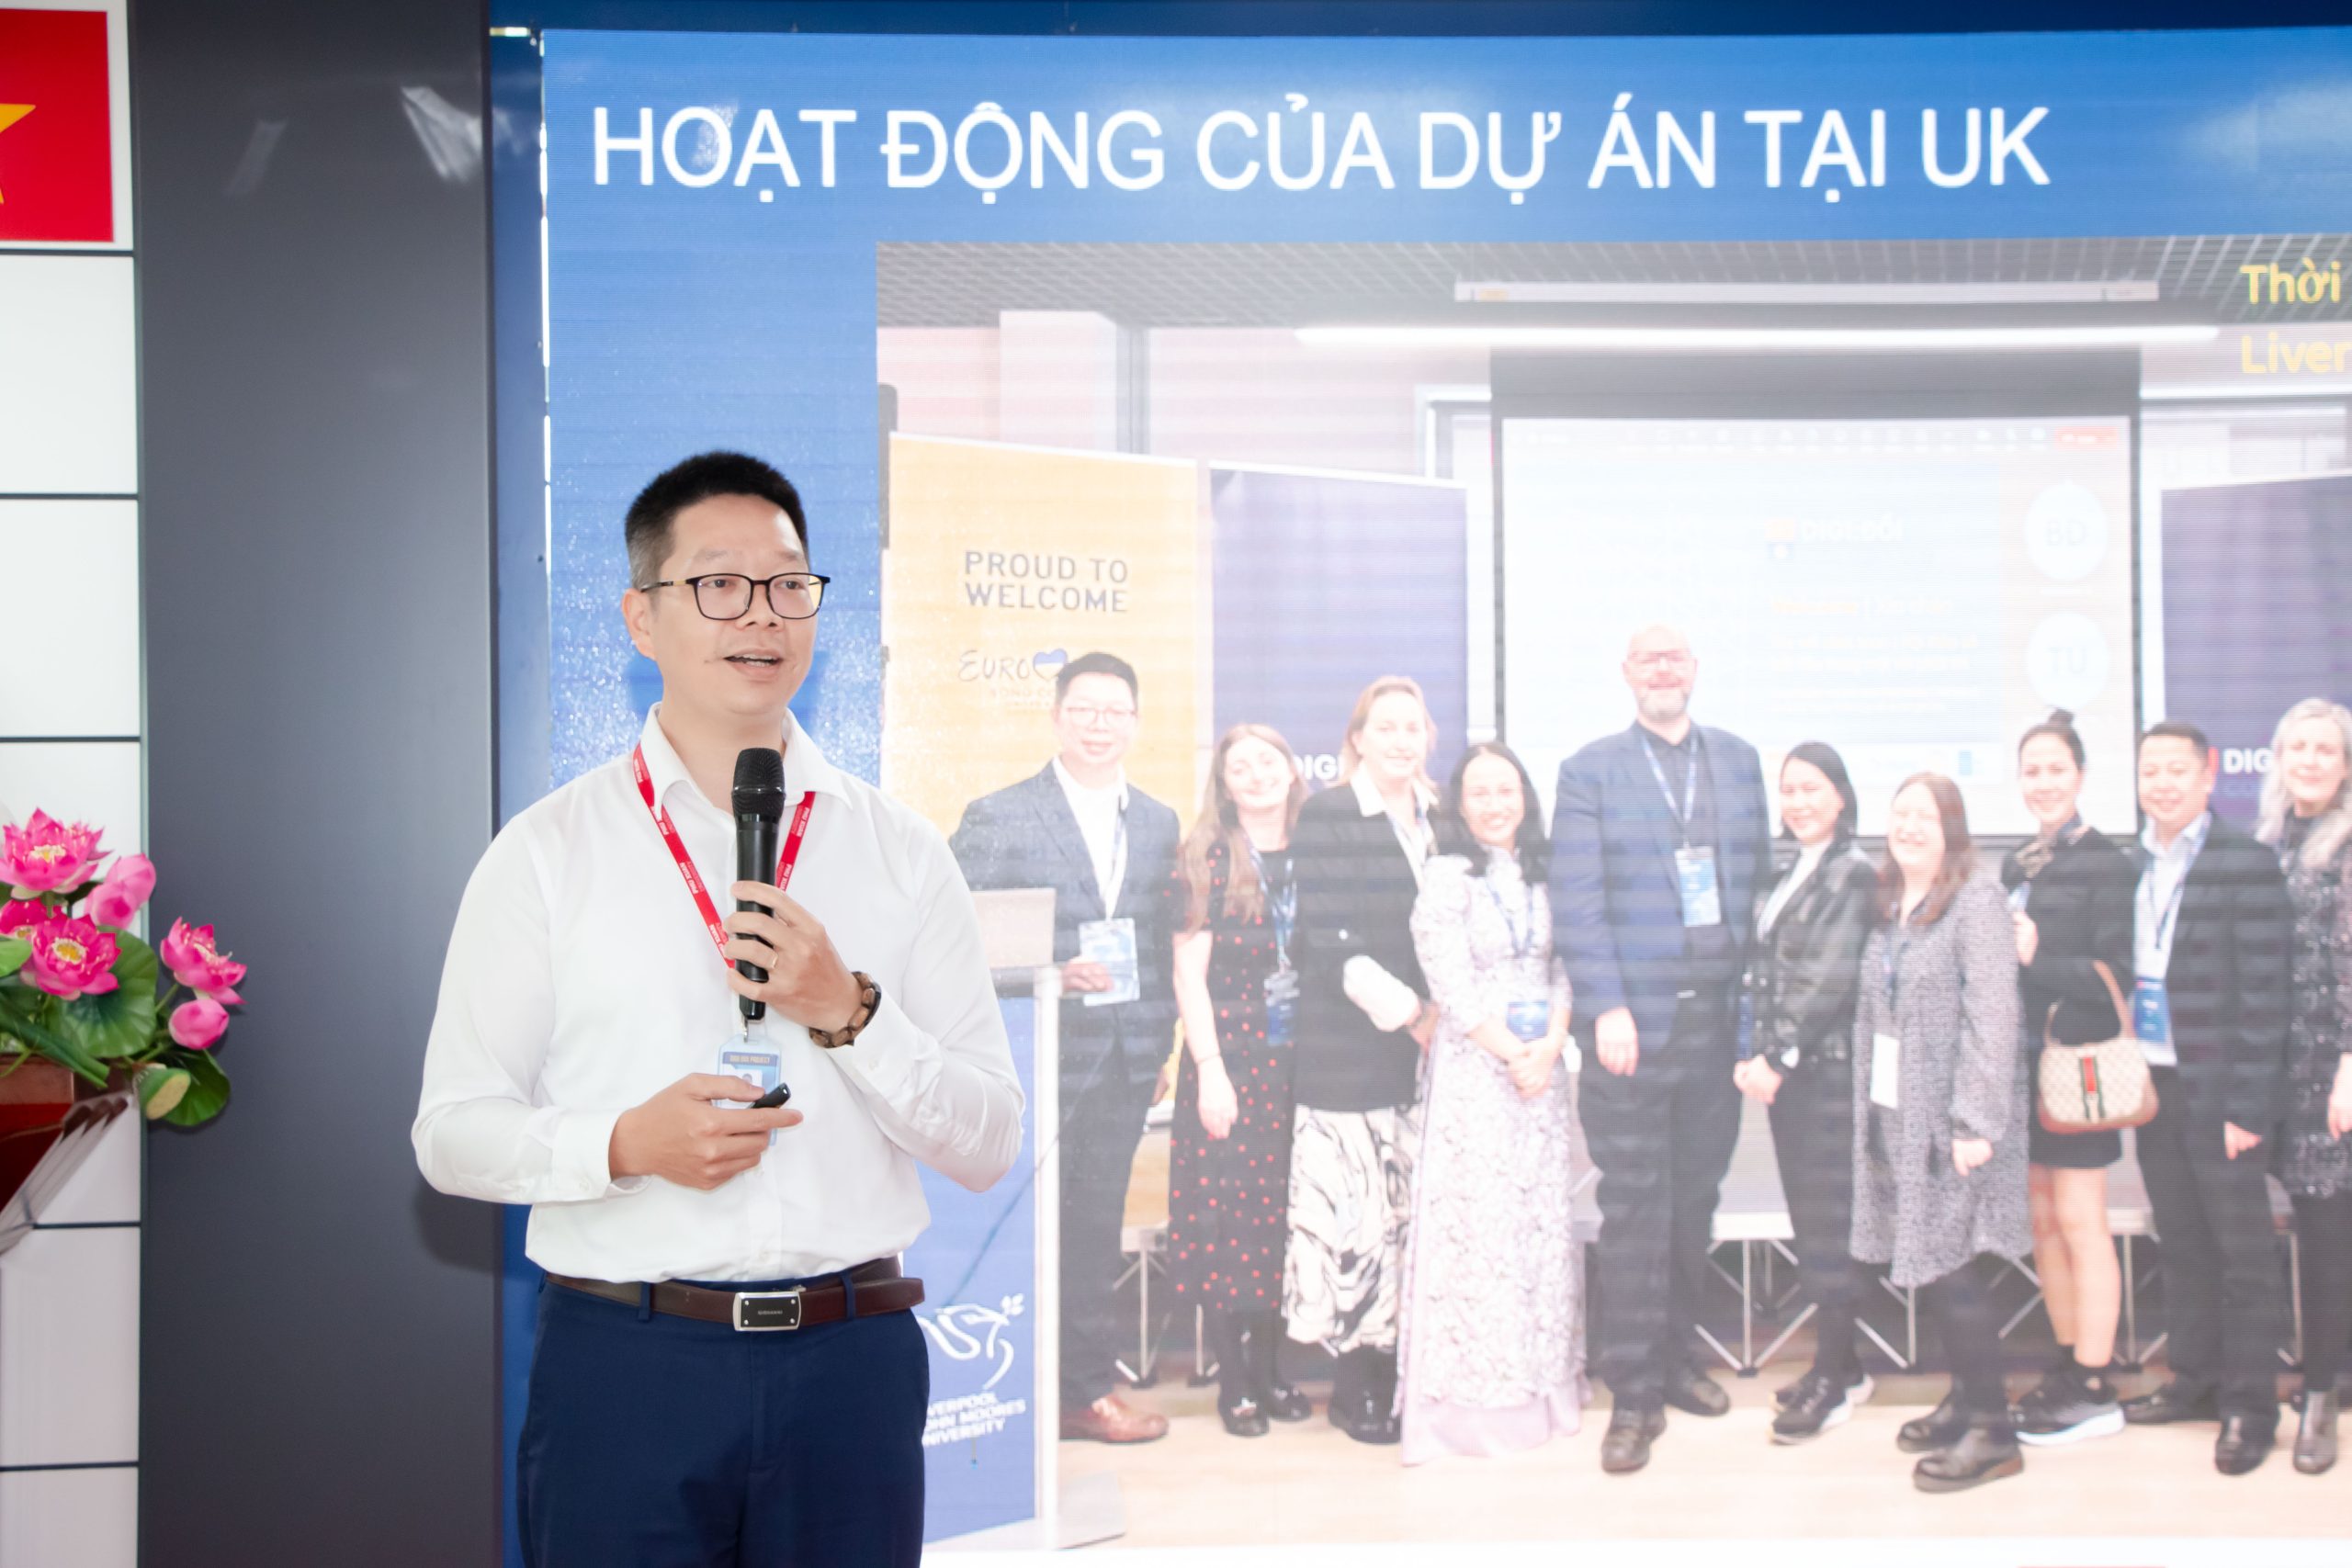 PGS.TS Nguyễn Tiến Đông đại diện dự án Digi:Đổi cập nhật các hoạt động của dự án